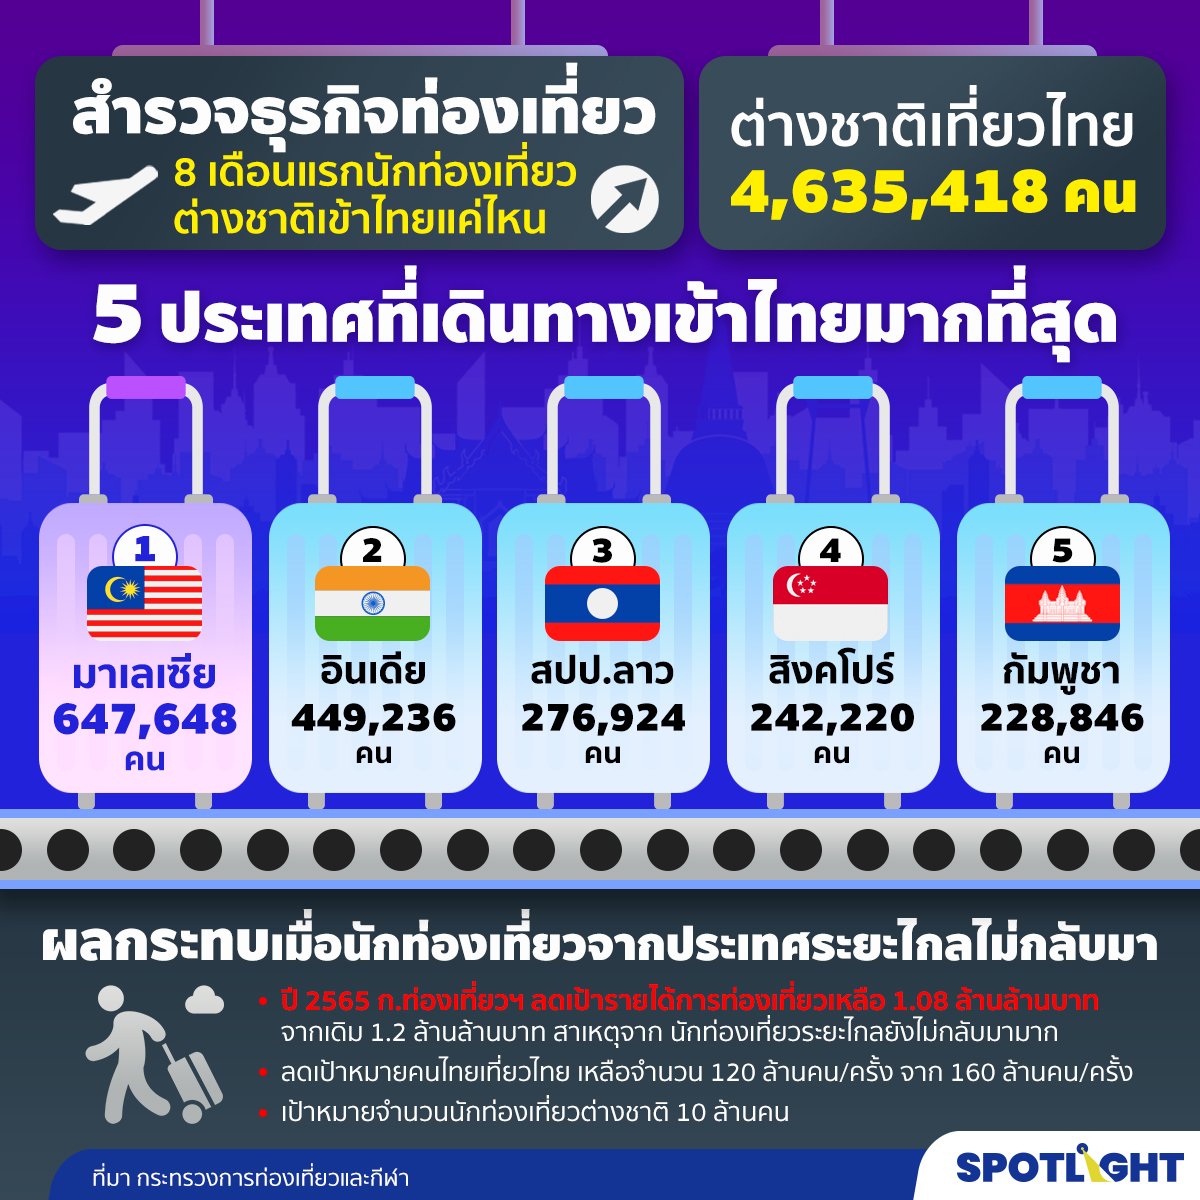 สถิตินักท่องเที่ยวต่างชาติเข้าไทย